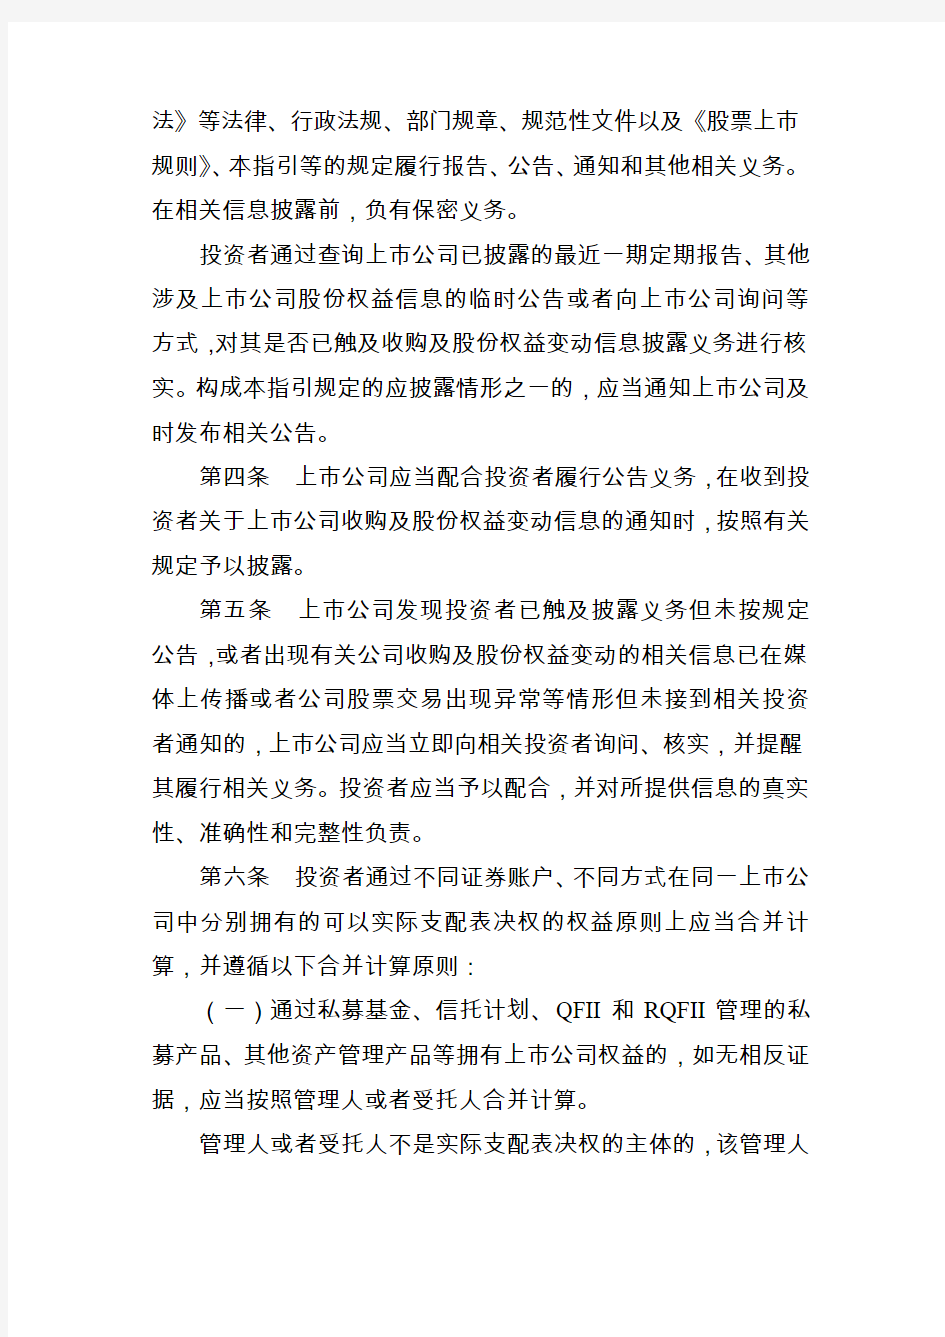 深圳证券交易所上市公司收购及股份权益变动信息披露业务指引